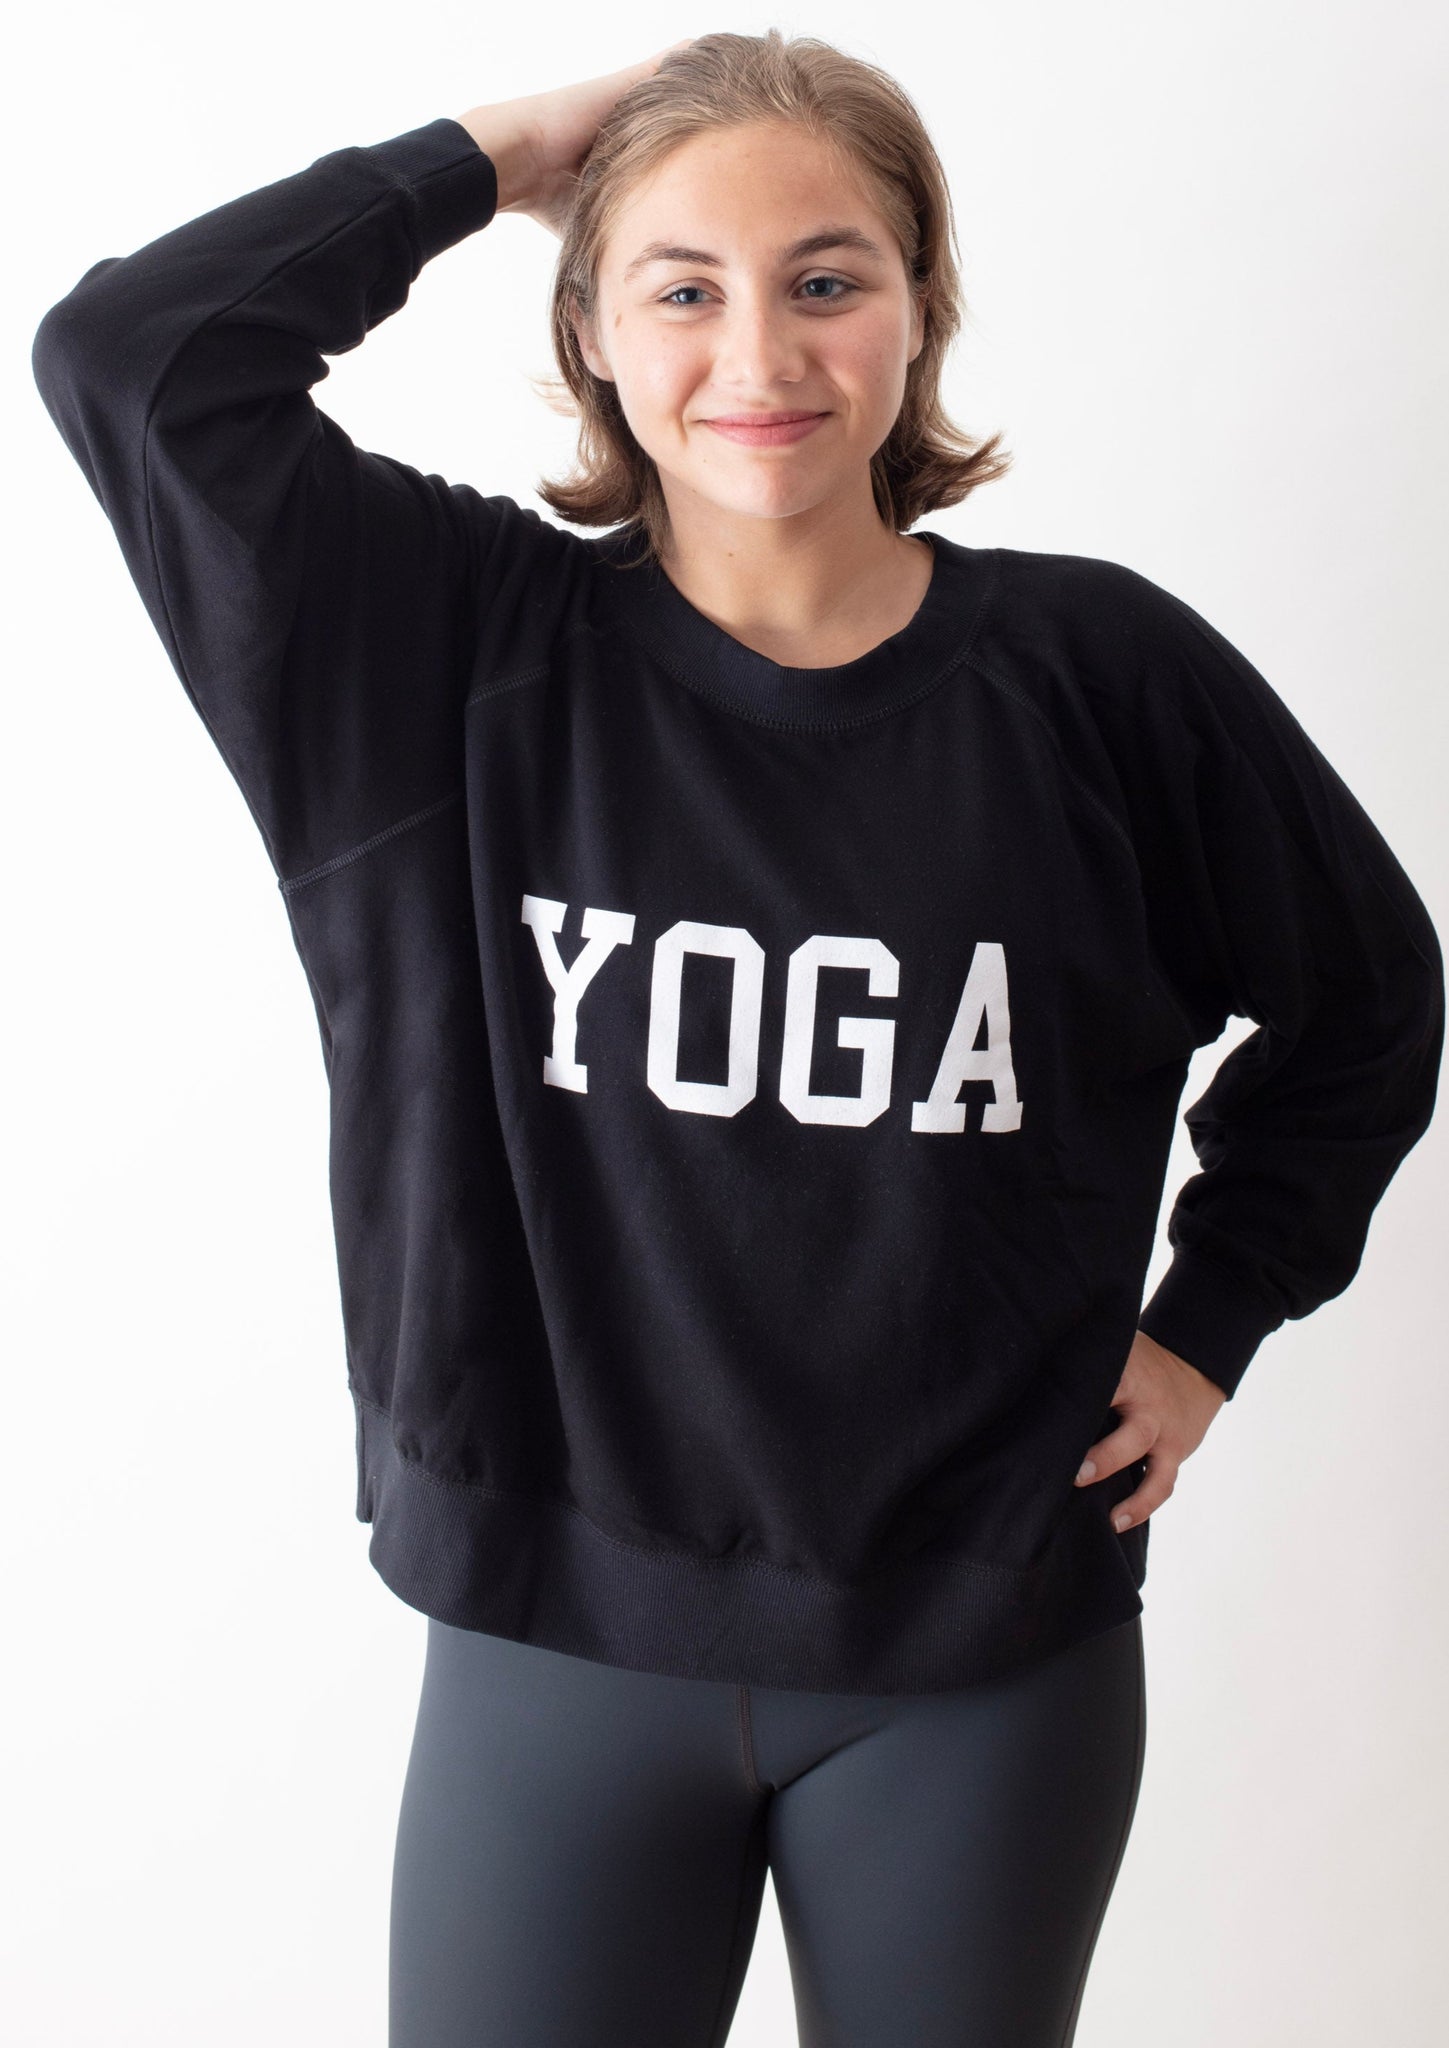 Long & Short Sleeve Yoga Tops for Women